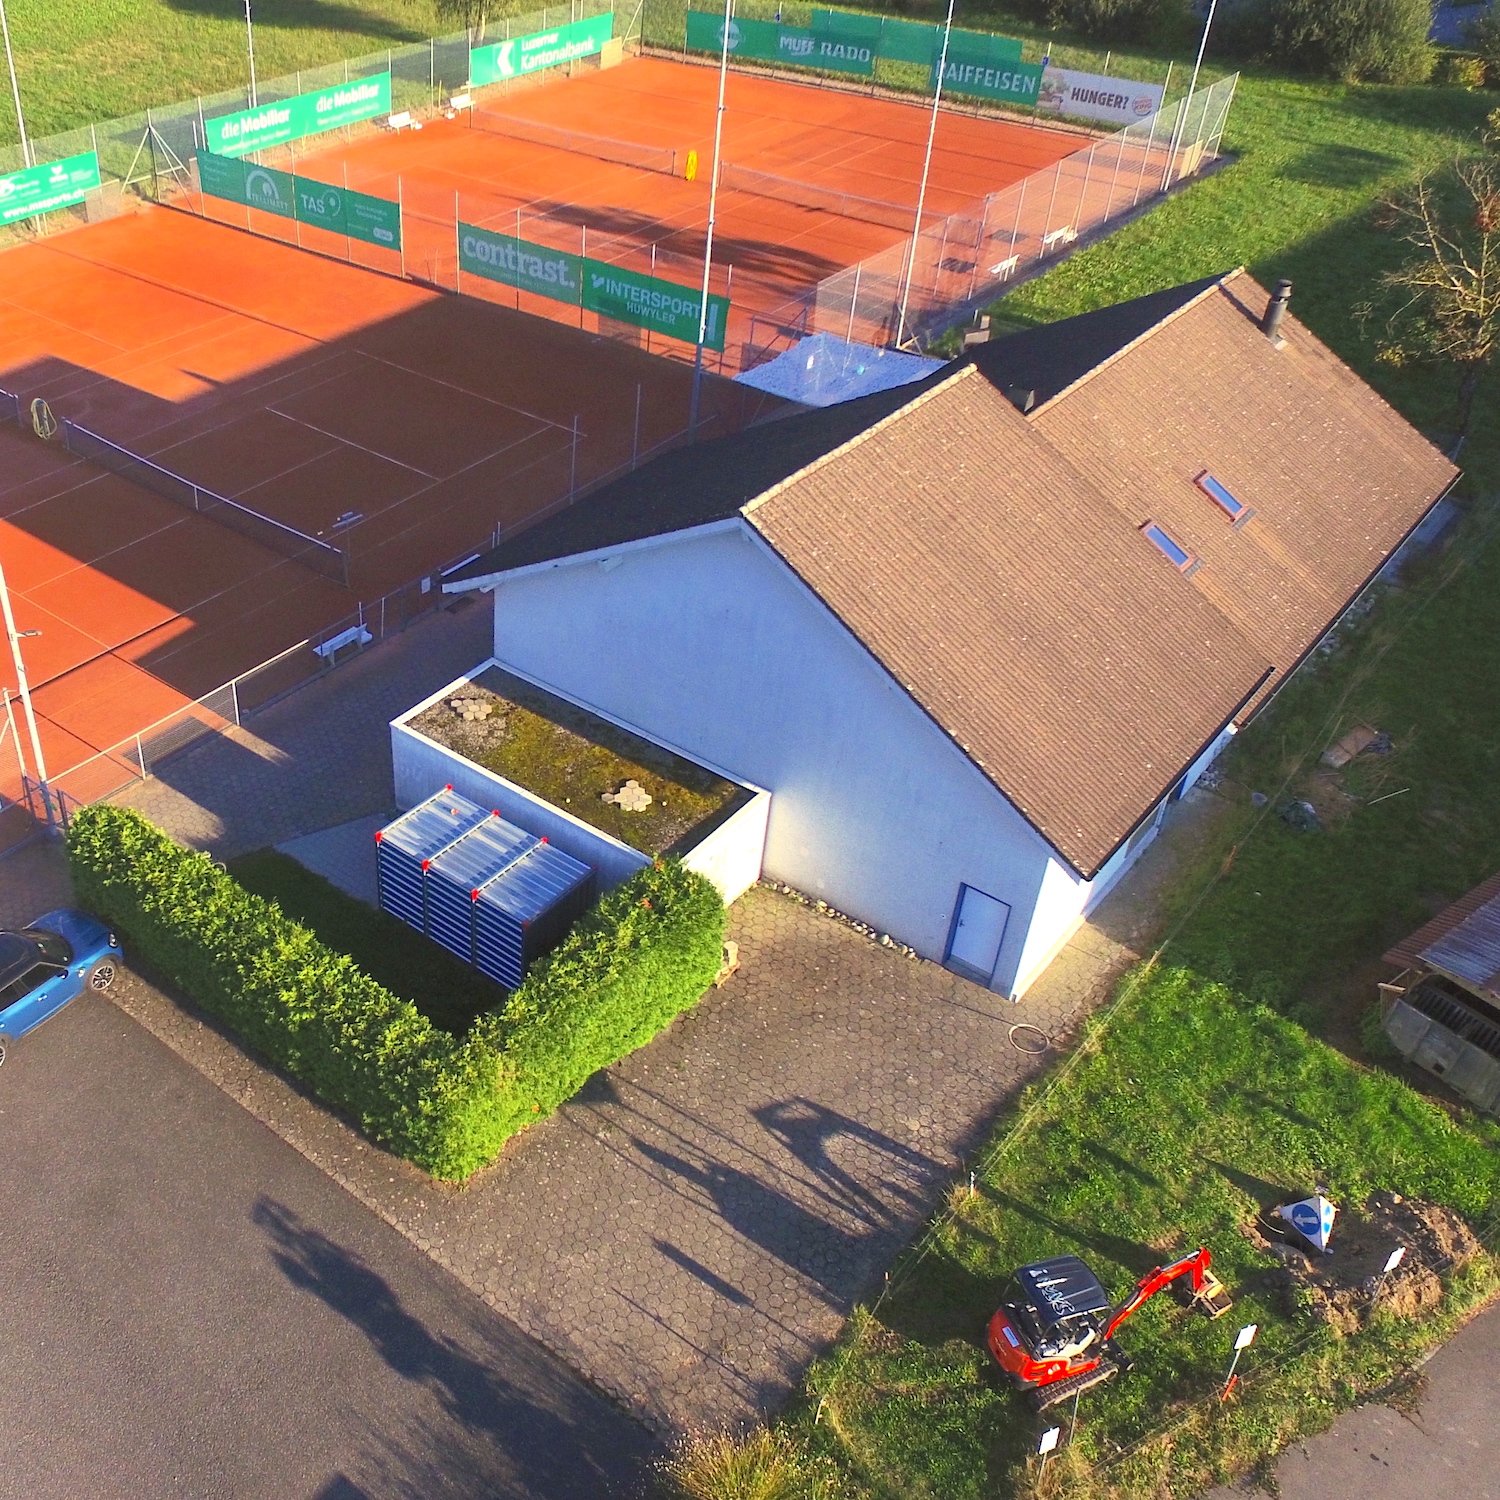 Tennisclub Hochdorf ohne Solar.JPG